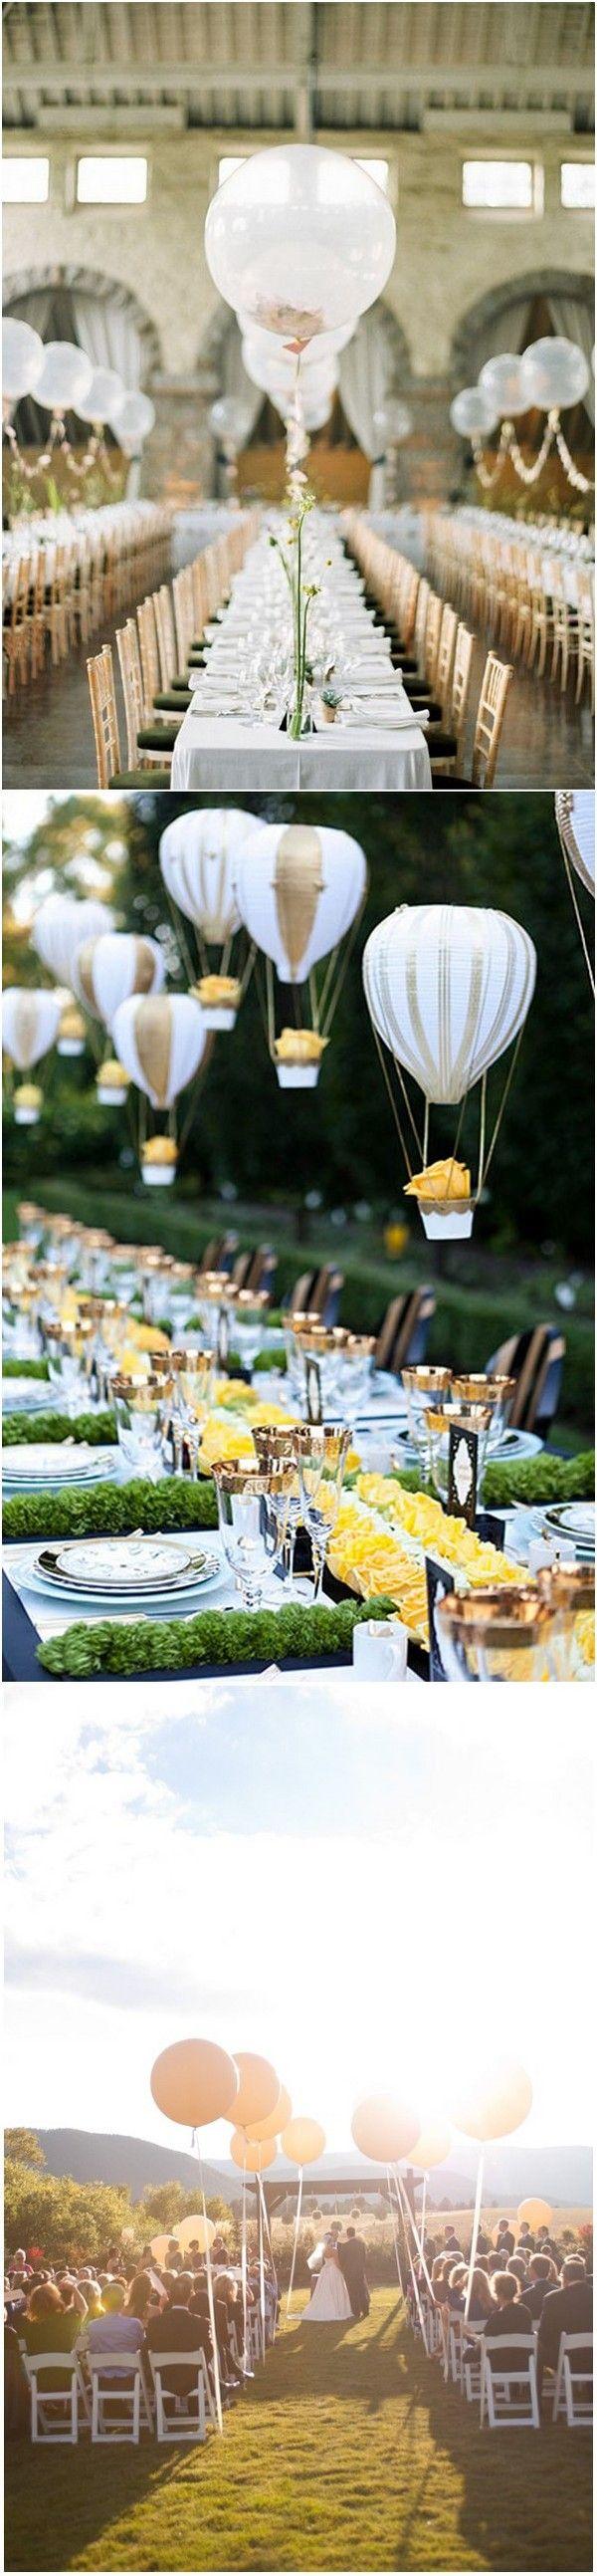 زفاف - 16 Romantic Wedding Decoration Ideas With Balloons - Page 3 Of 3